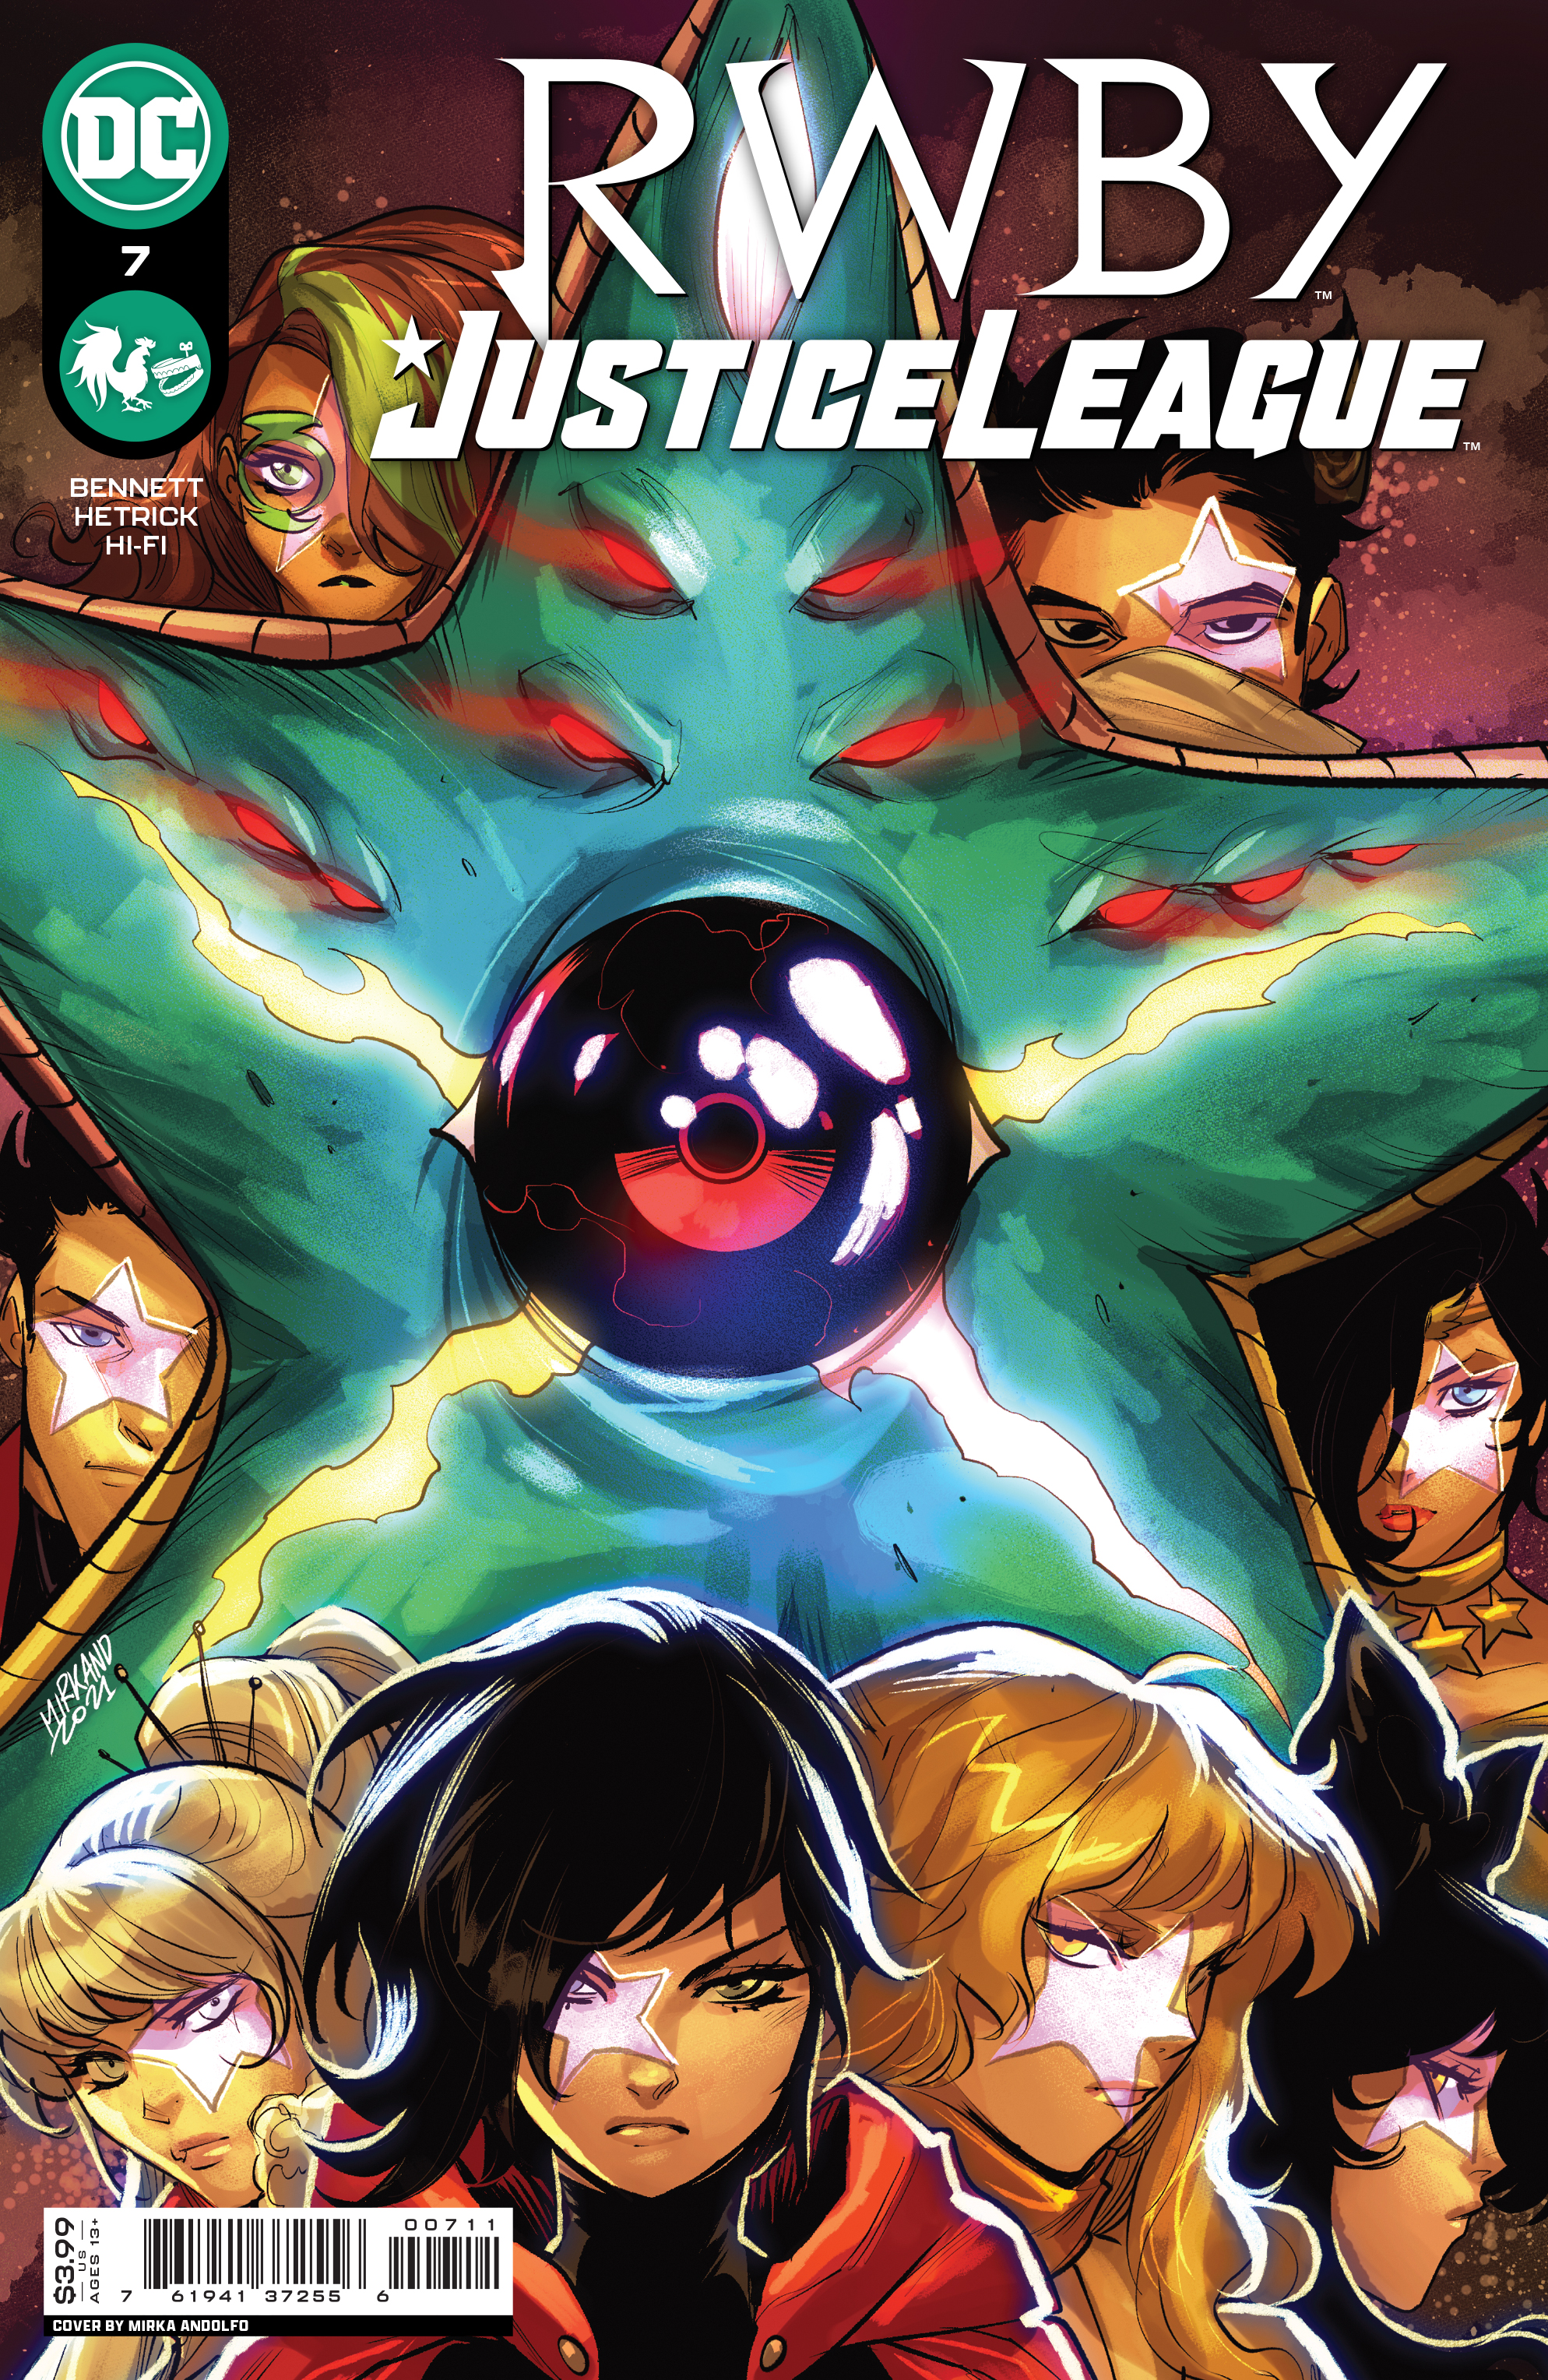 RWBY Justice League #7 Cover A Mirka Andolfo (Of 7)